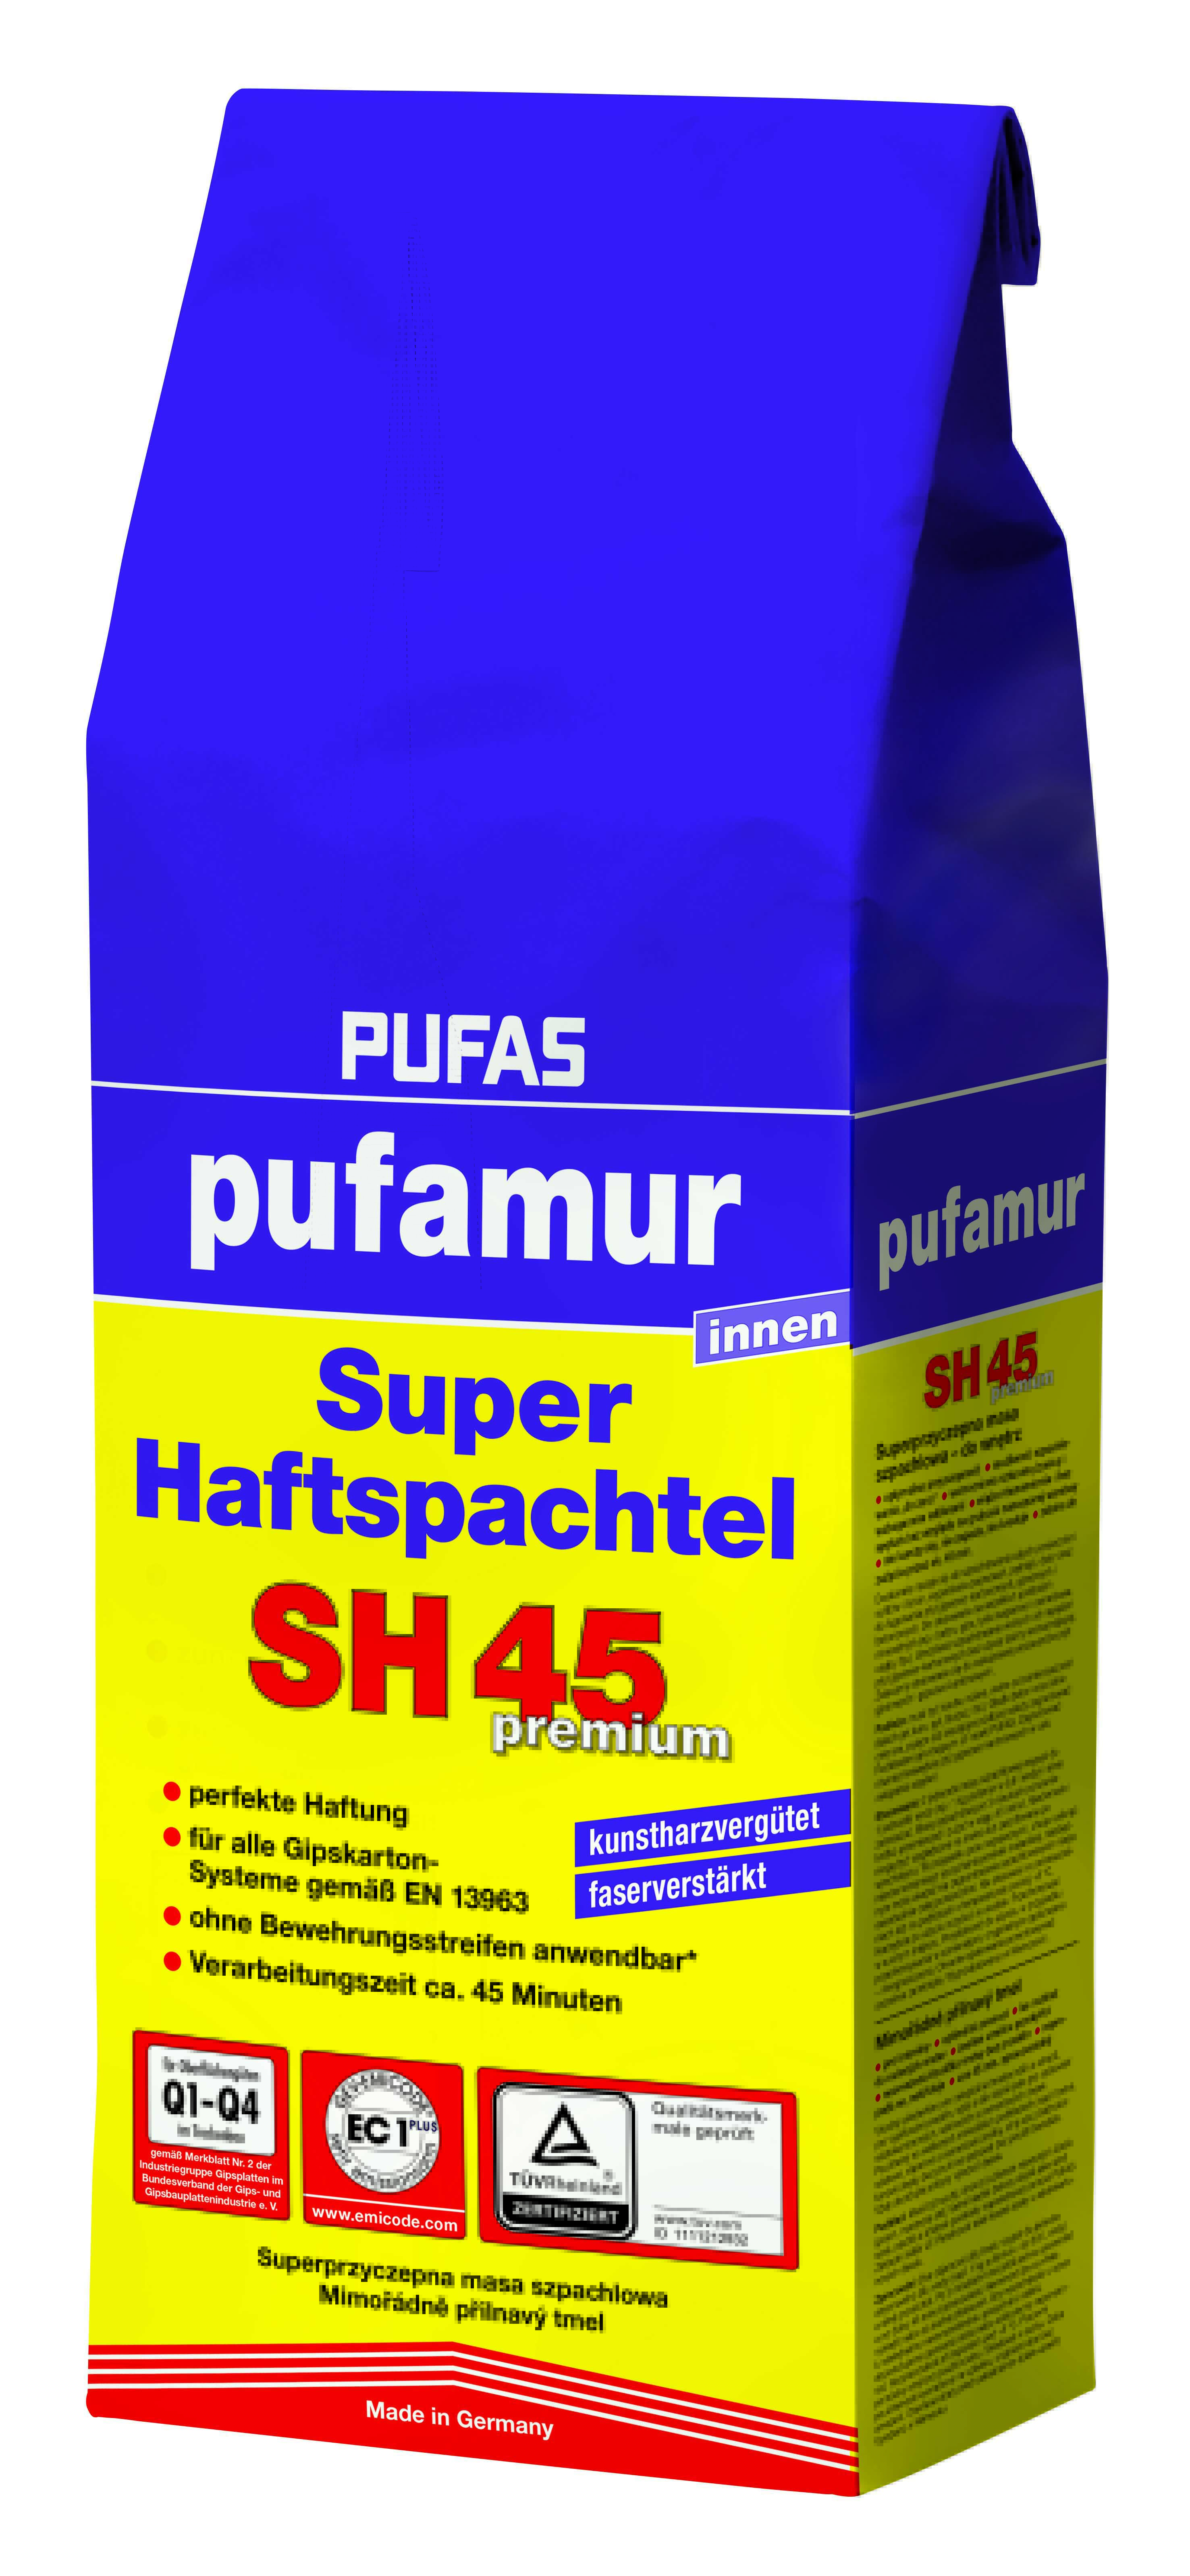 PUFAS pufamur Super-Haftspachtel SH45 premium